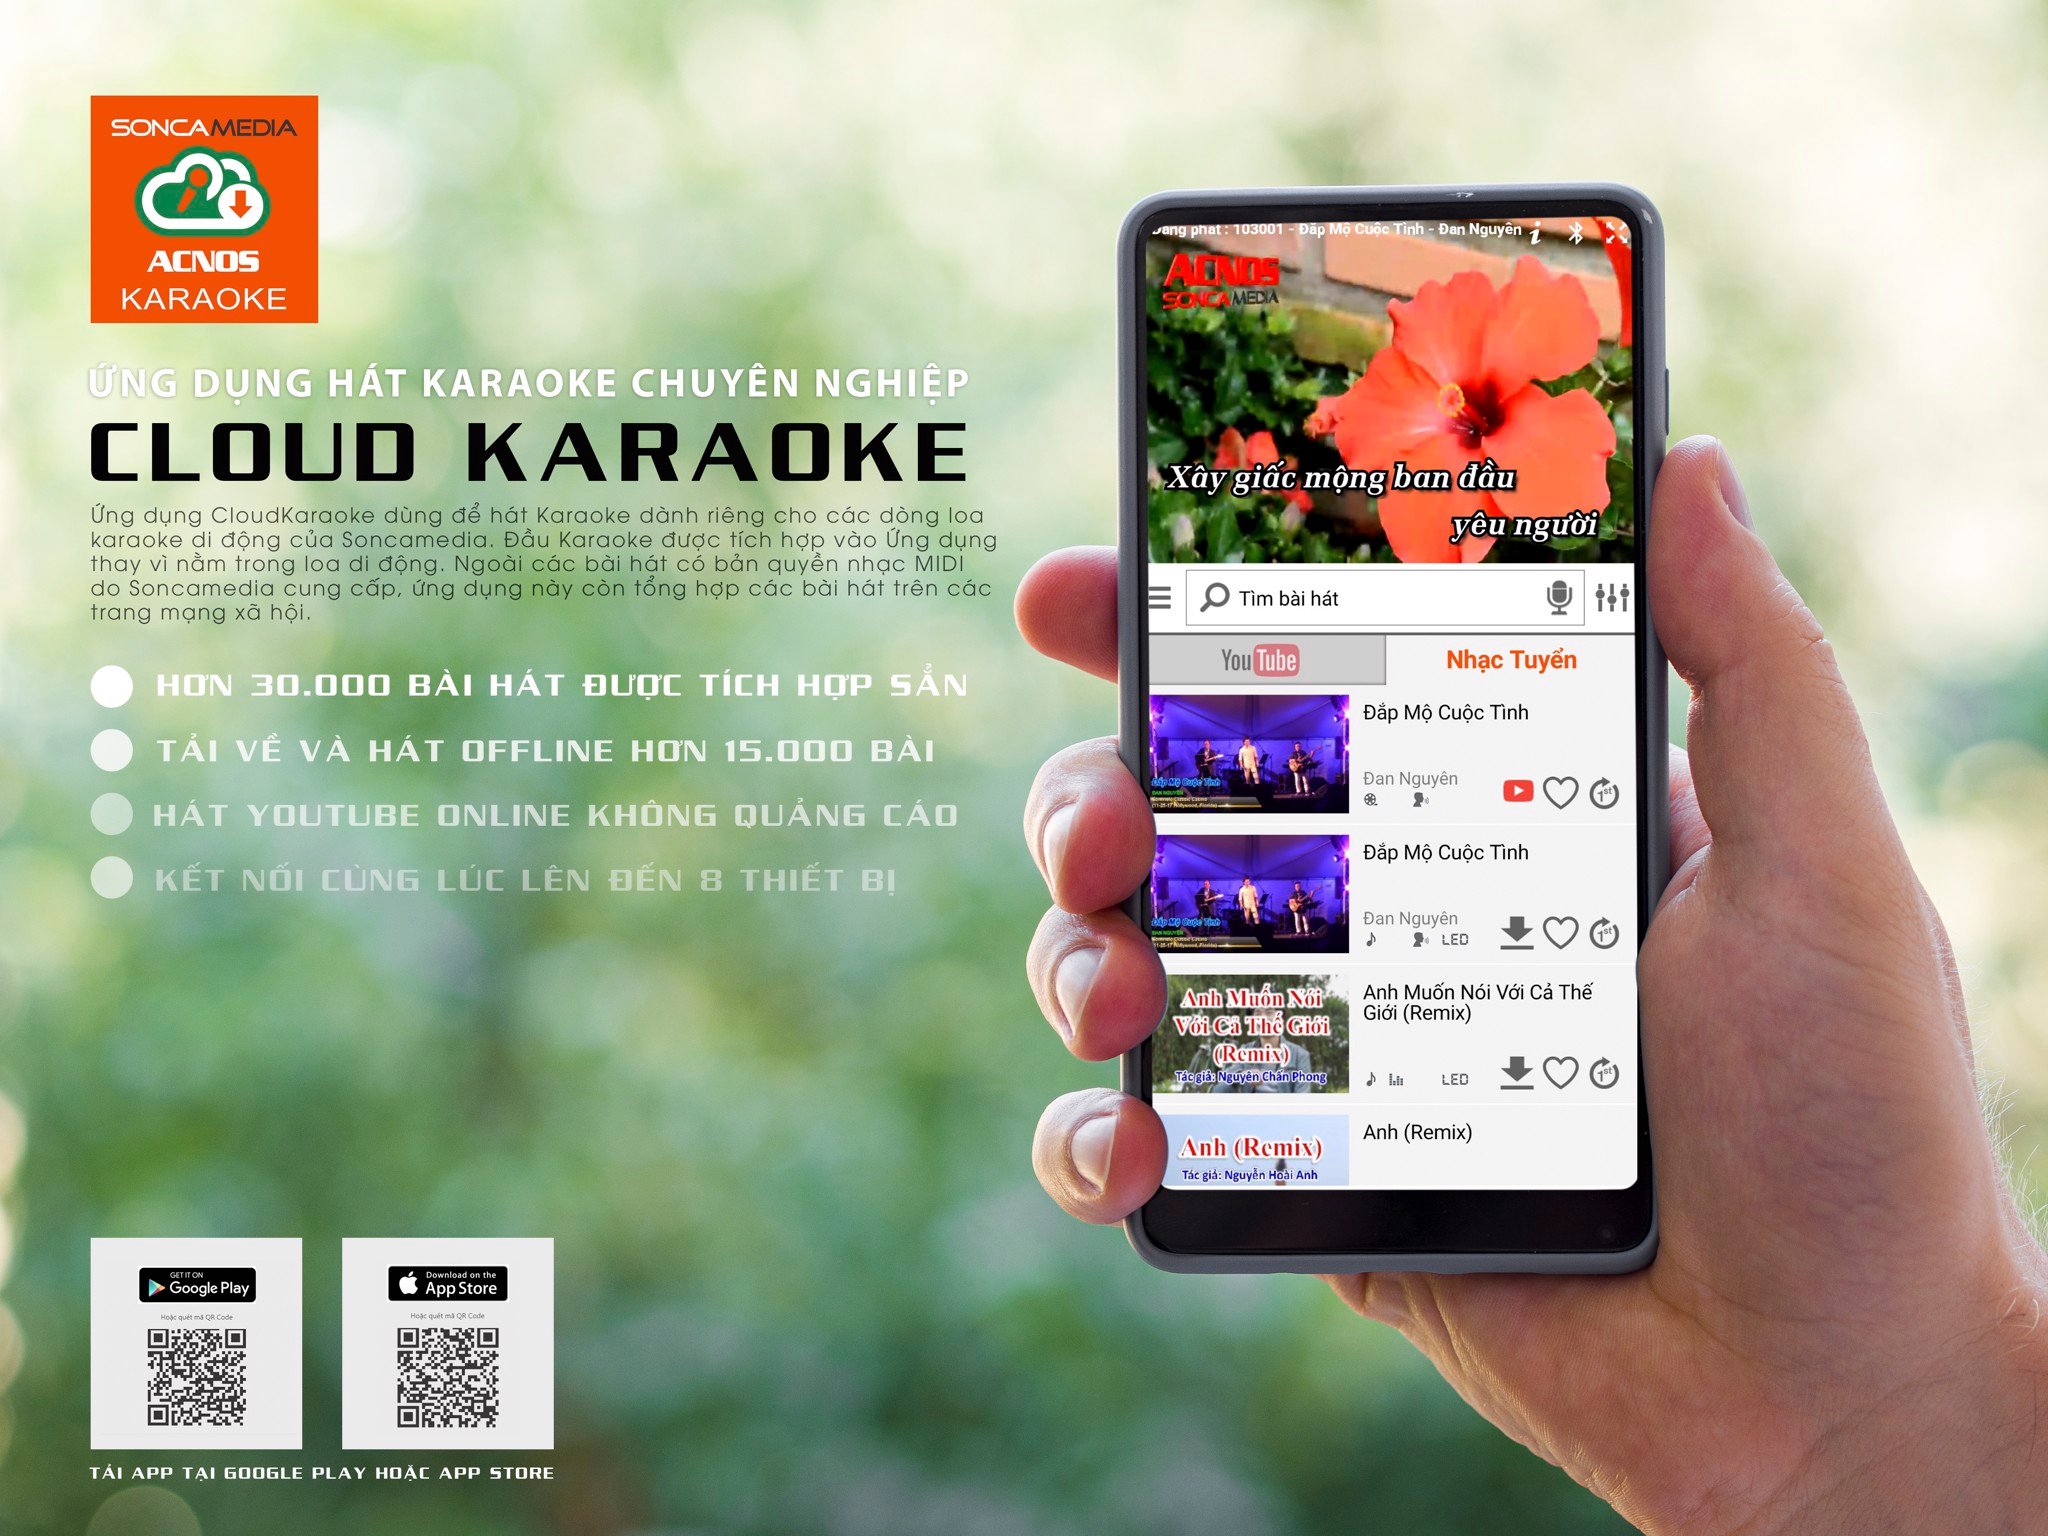 ACNOS CB51neo - ứng dụng hát karaoke chuyên nghiệp